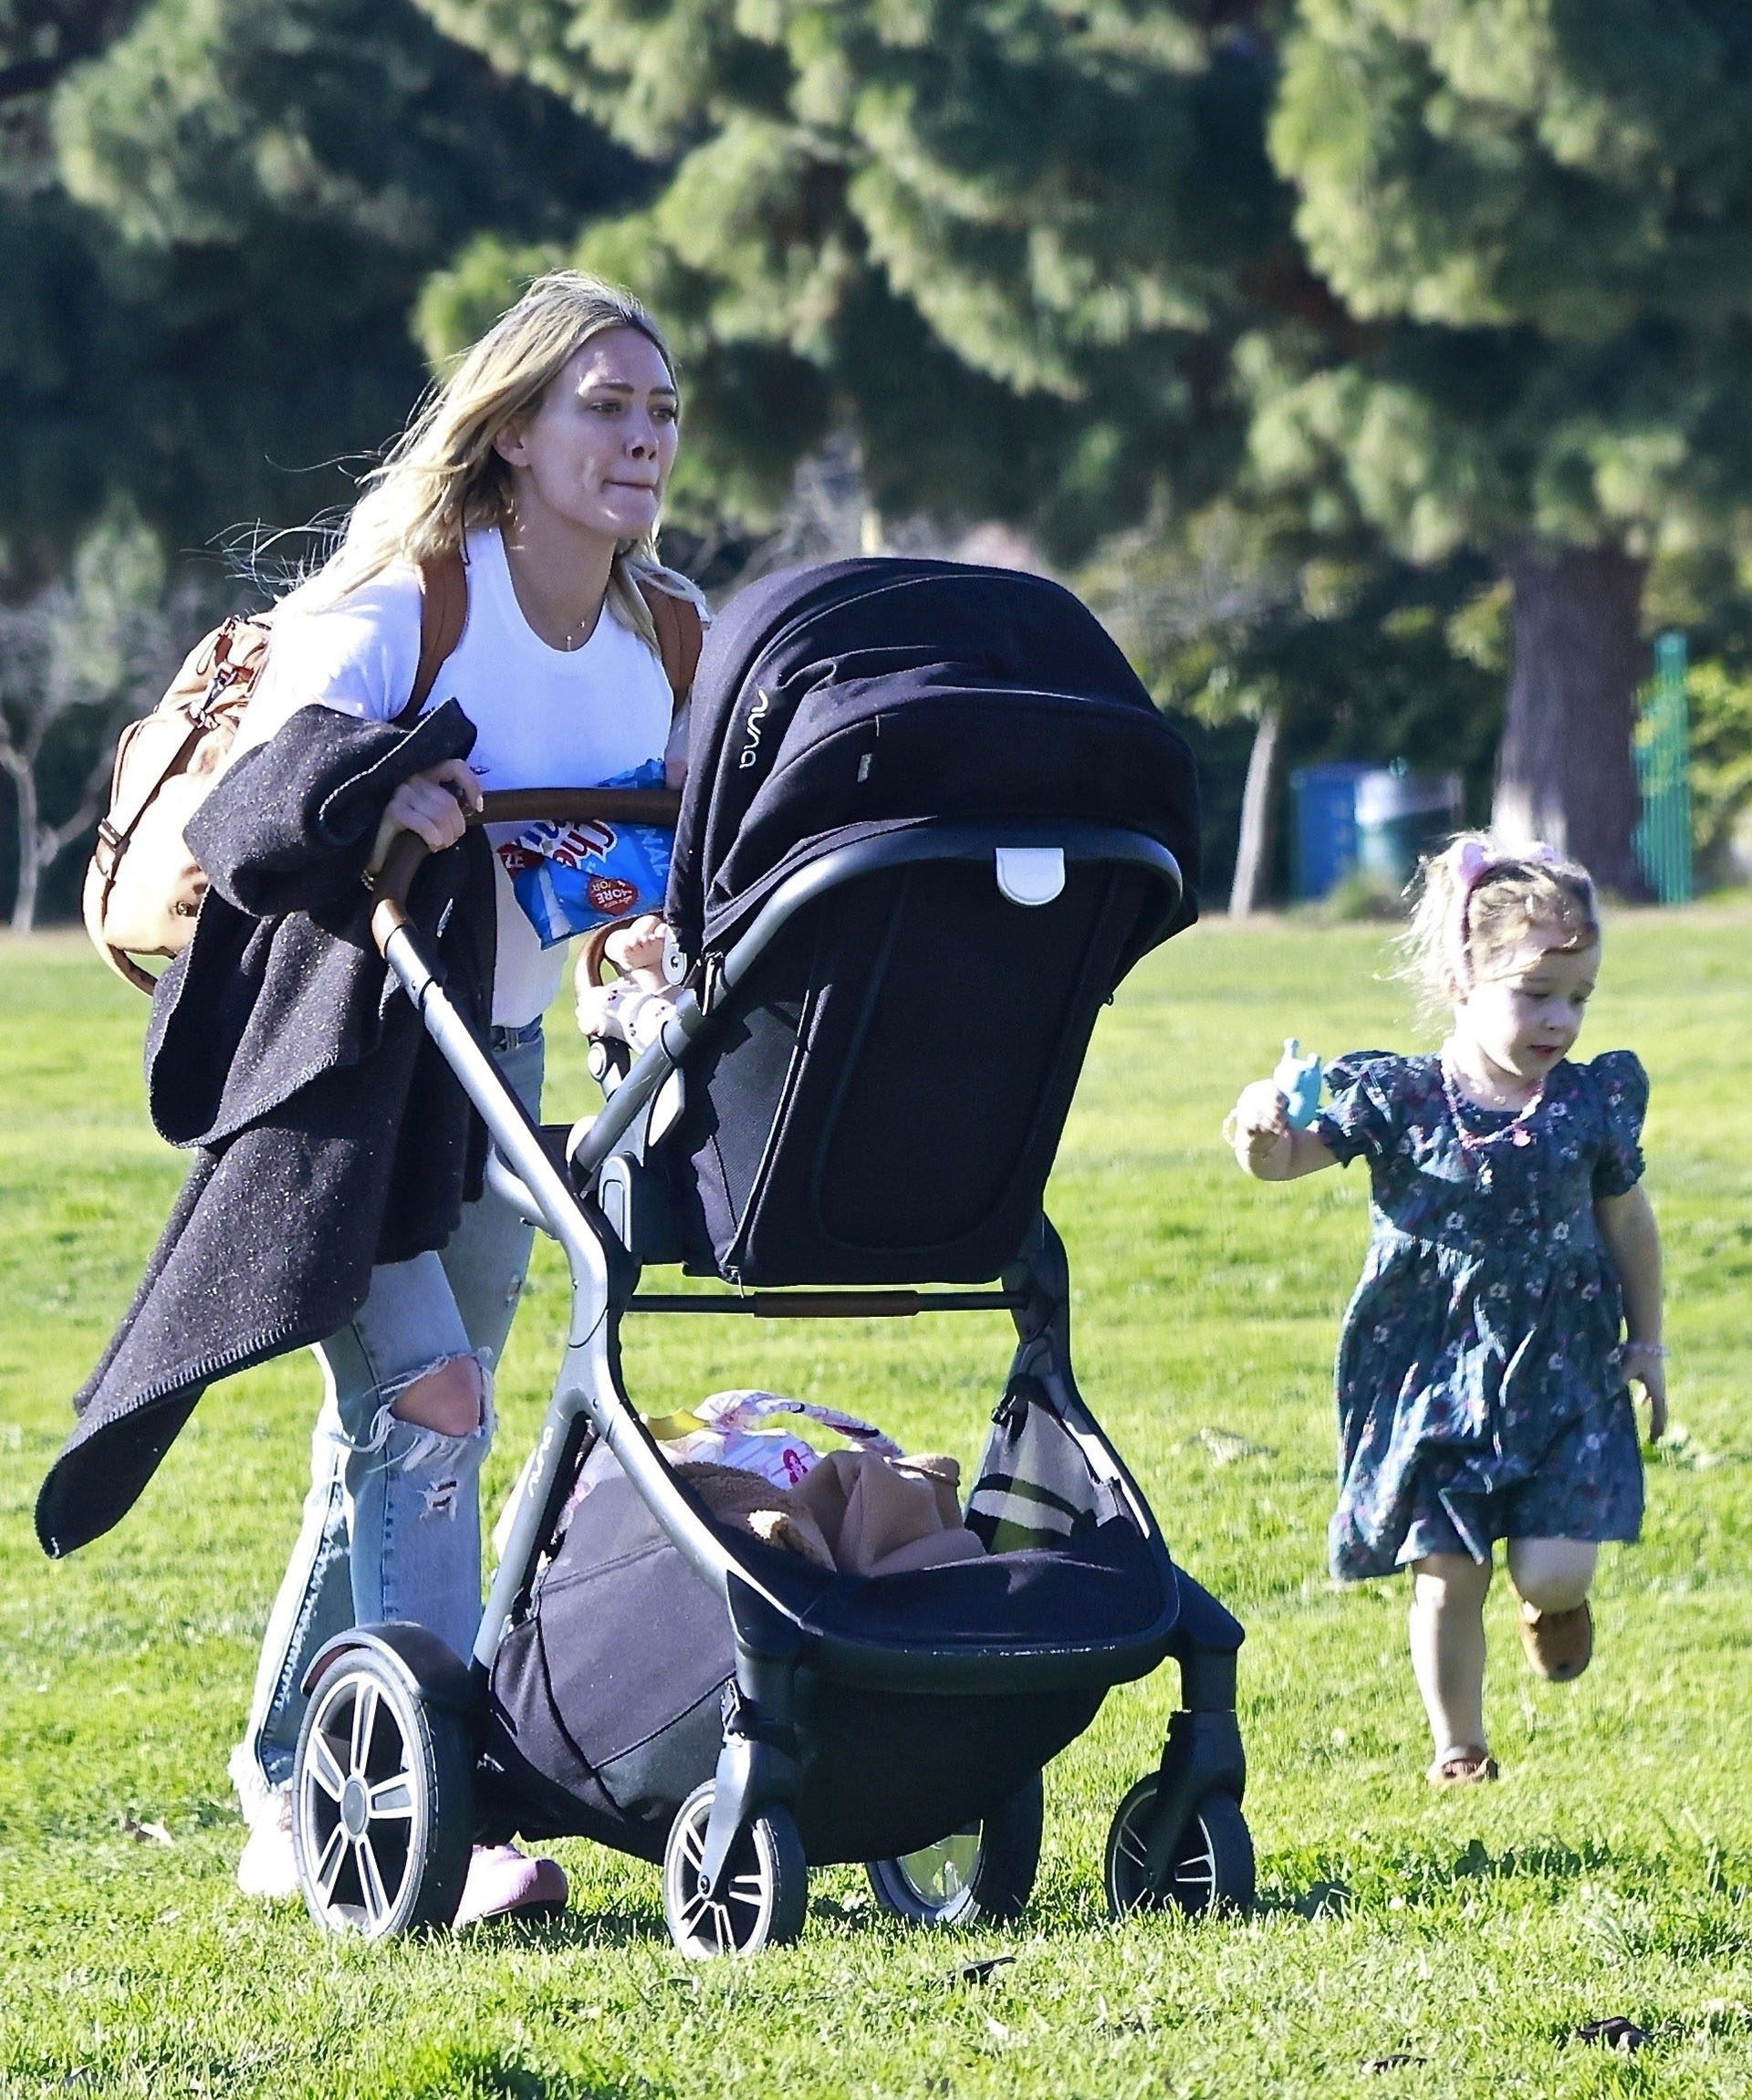 Día en familia. Hilary Duff aprovechó el tiempo libre que tuvo en su trabajo para disfrutar de una tarde al aire libre en el parque de Los Ángeles junto a sus hijas